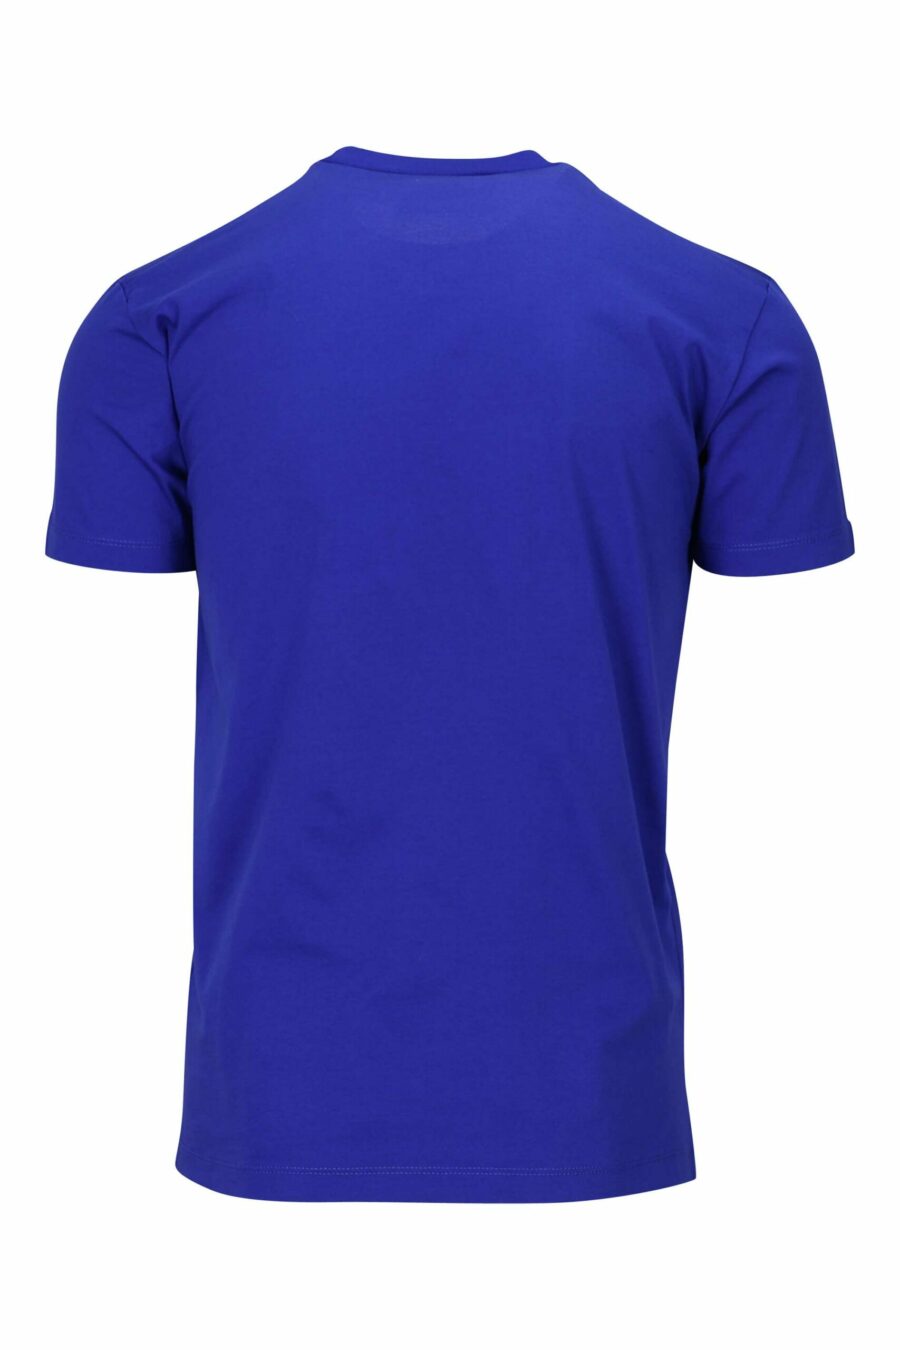 Elektrisch blaues T-Shirt mit weißem "Icon" Maxilogo - 8054148035525 1 skaliert